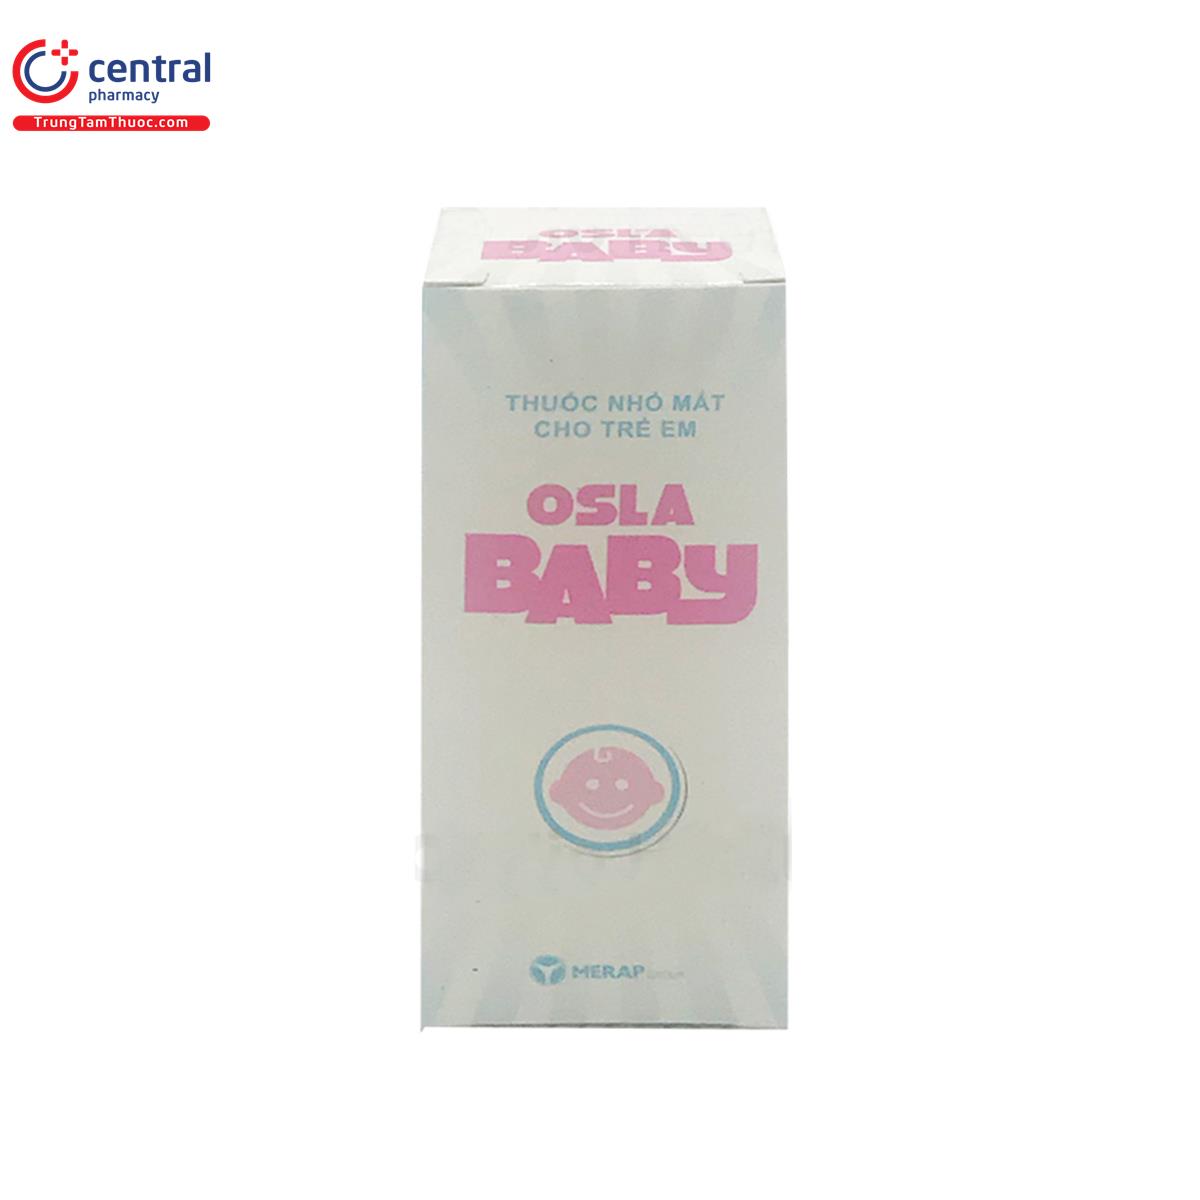 osla baby 8 Q6304